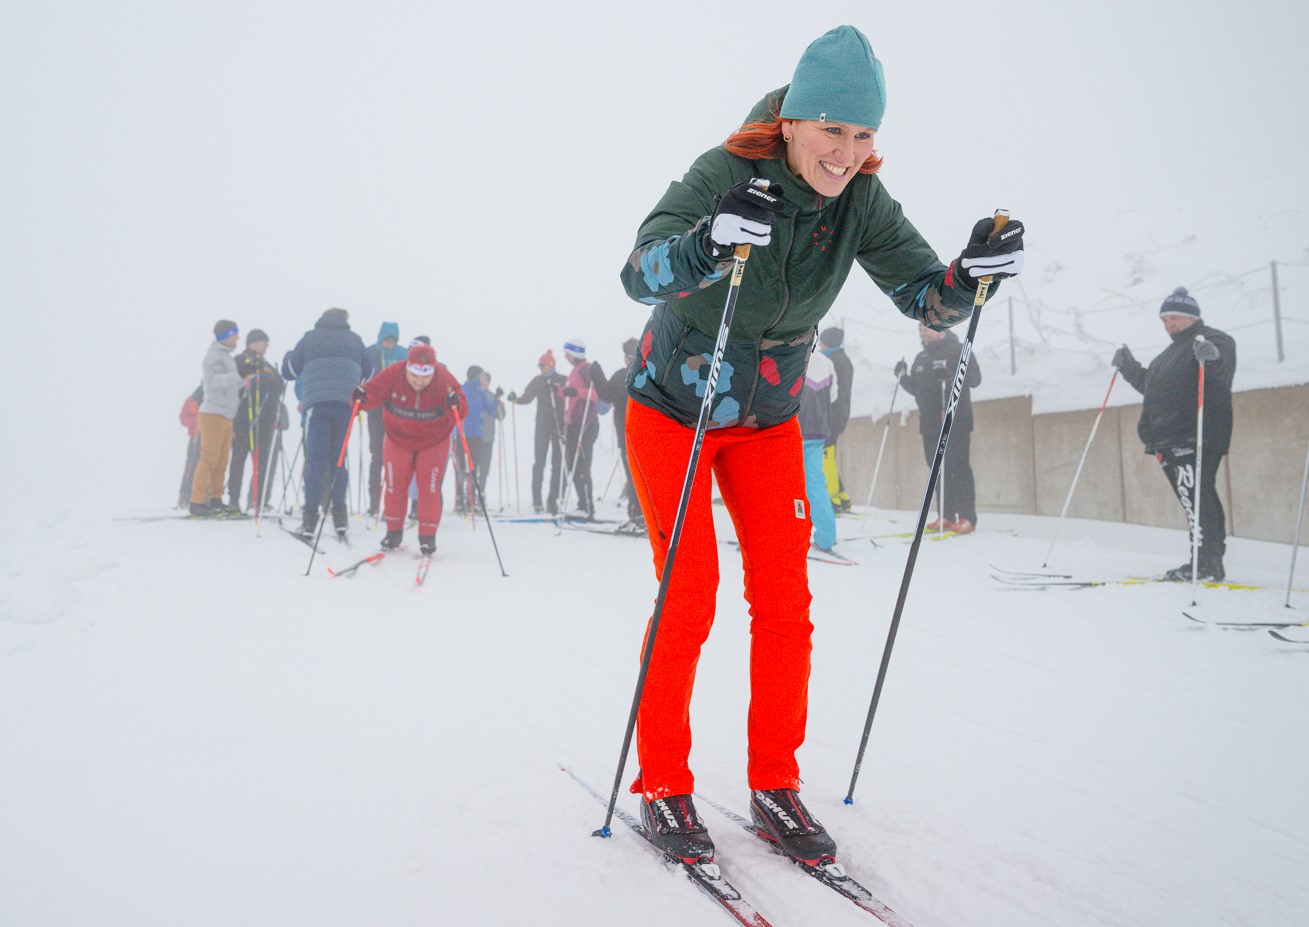 Eine Skilangläuferin auf Skiern im Schnee auf einer Skipiste. Im Hintergrund weitere Skifahrer.